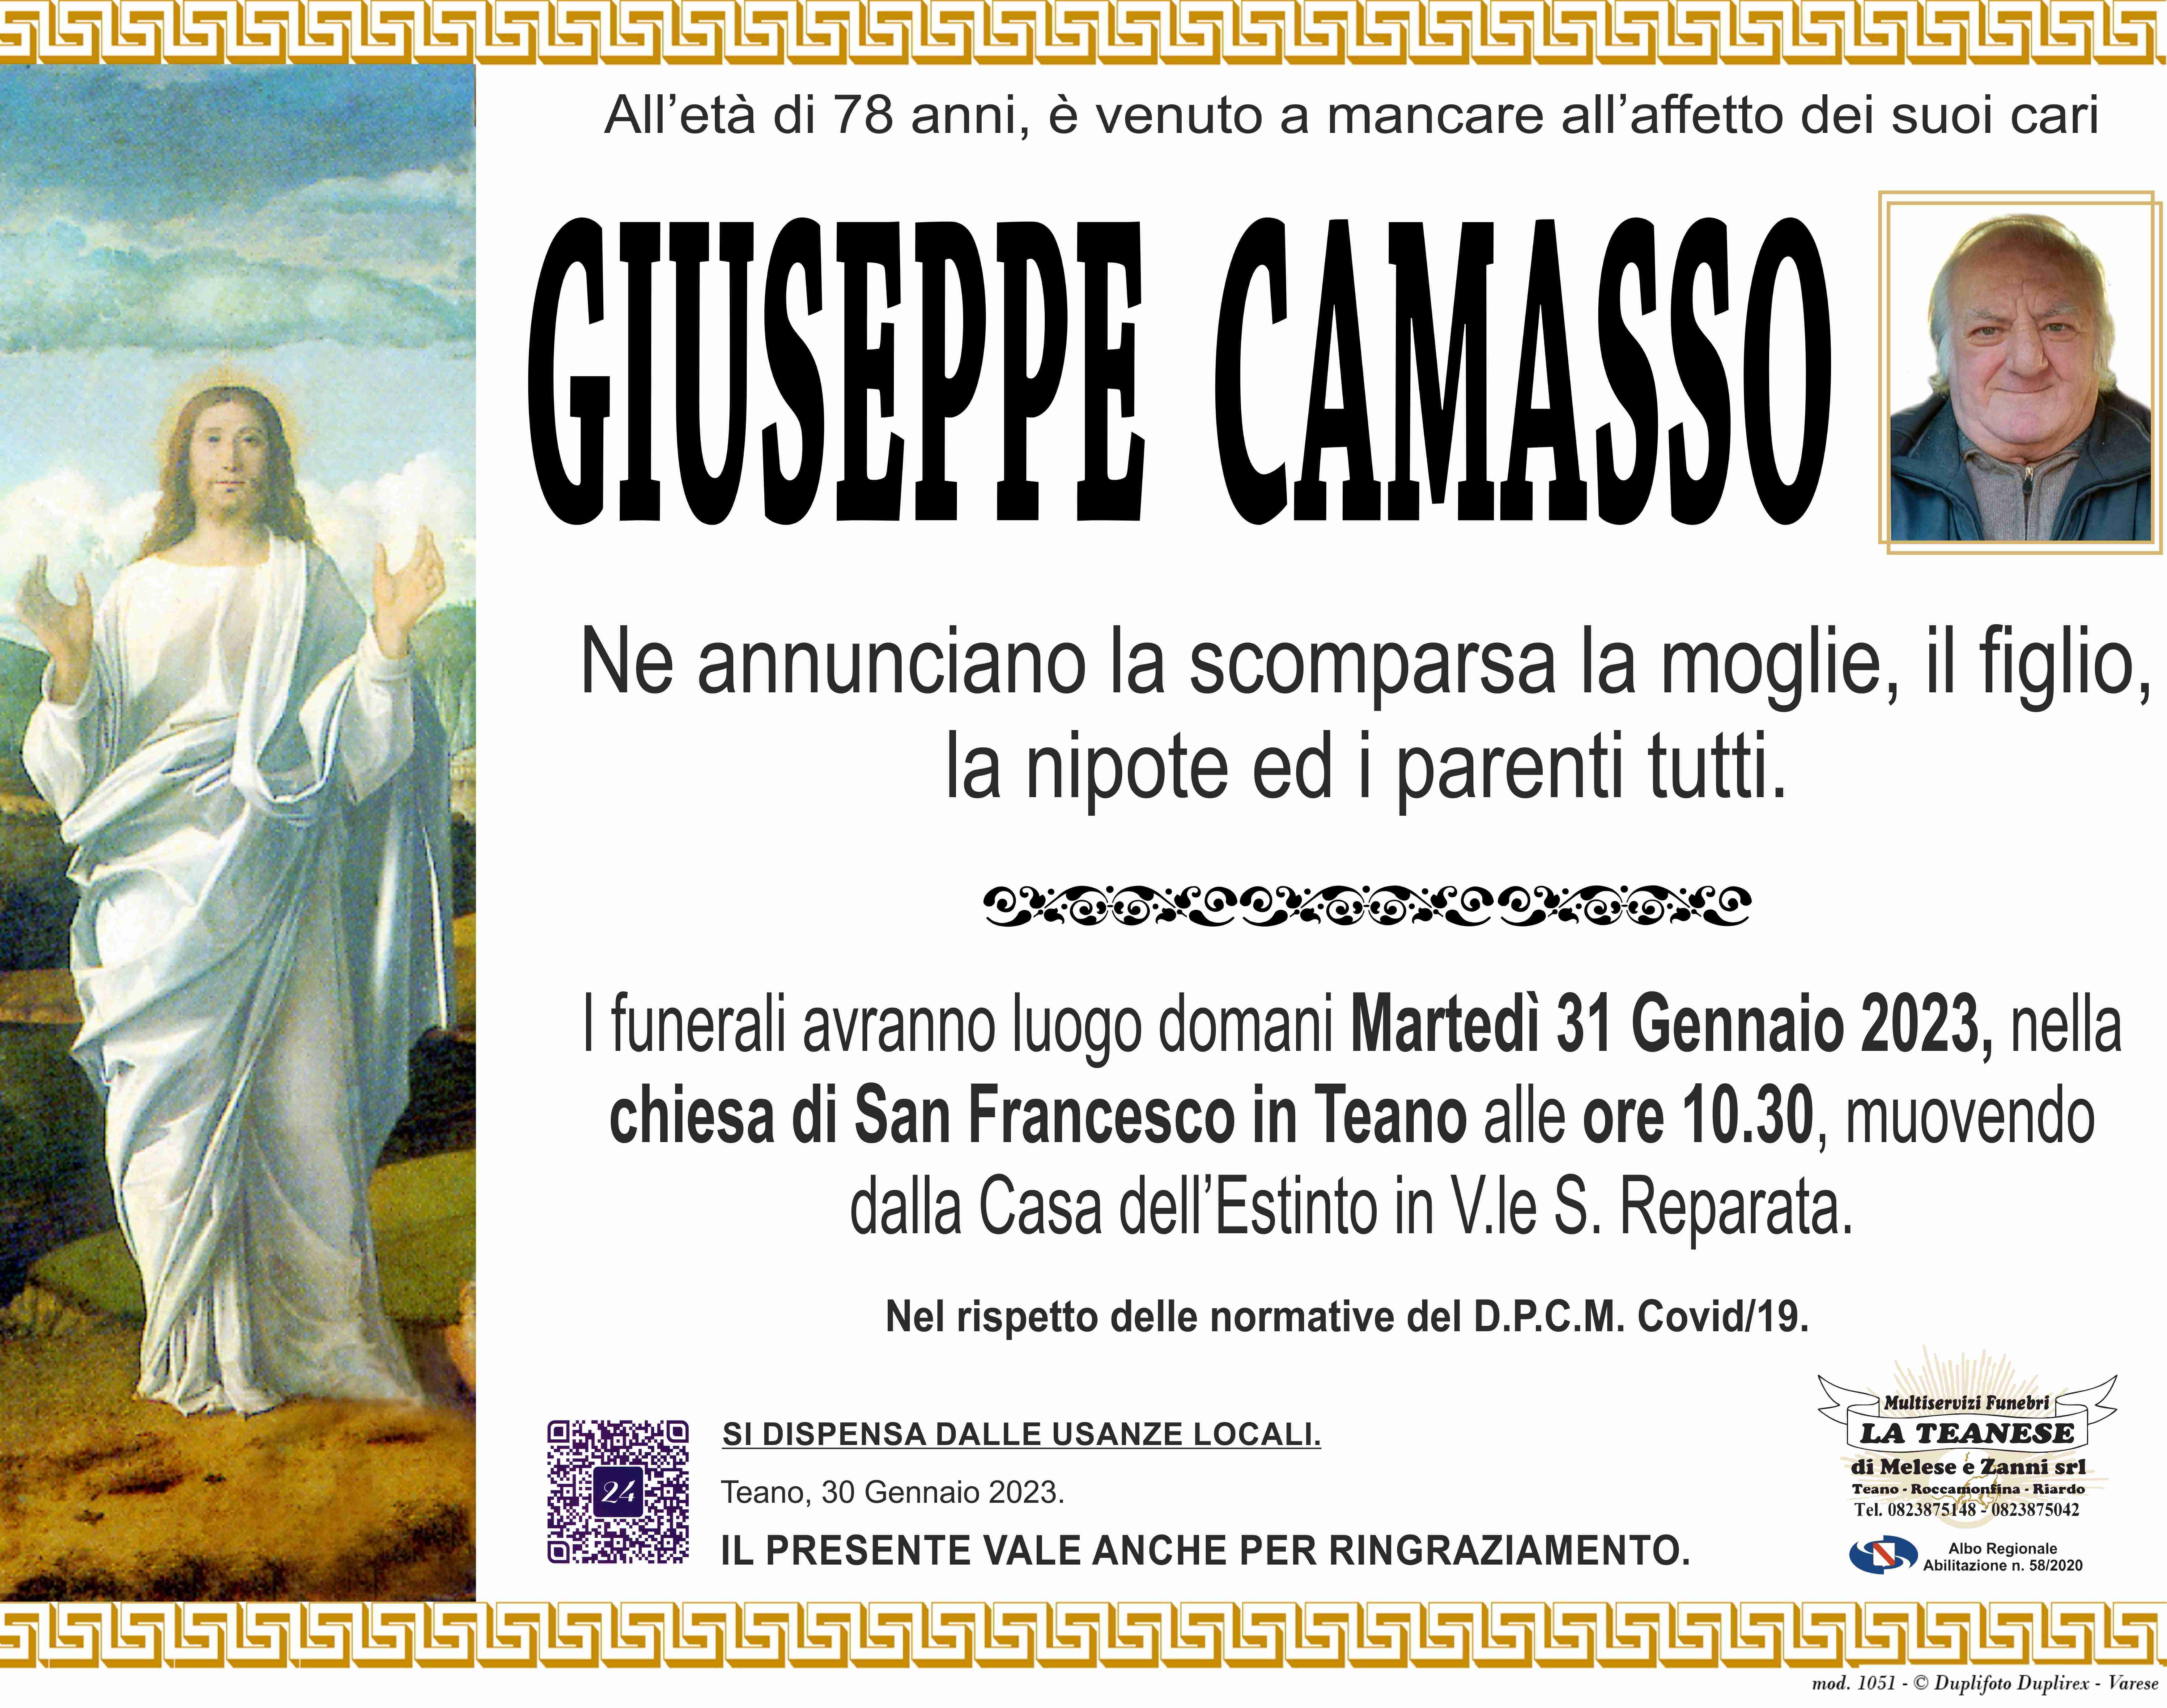 Giuseppe Camasso